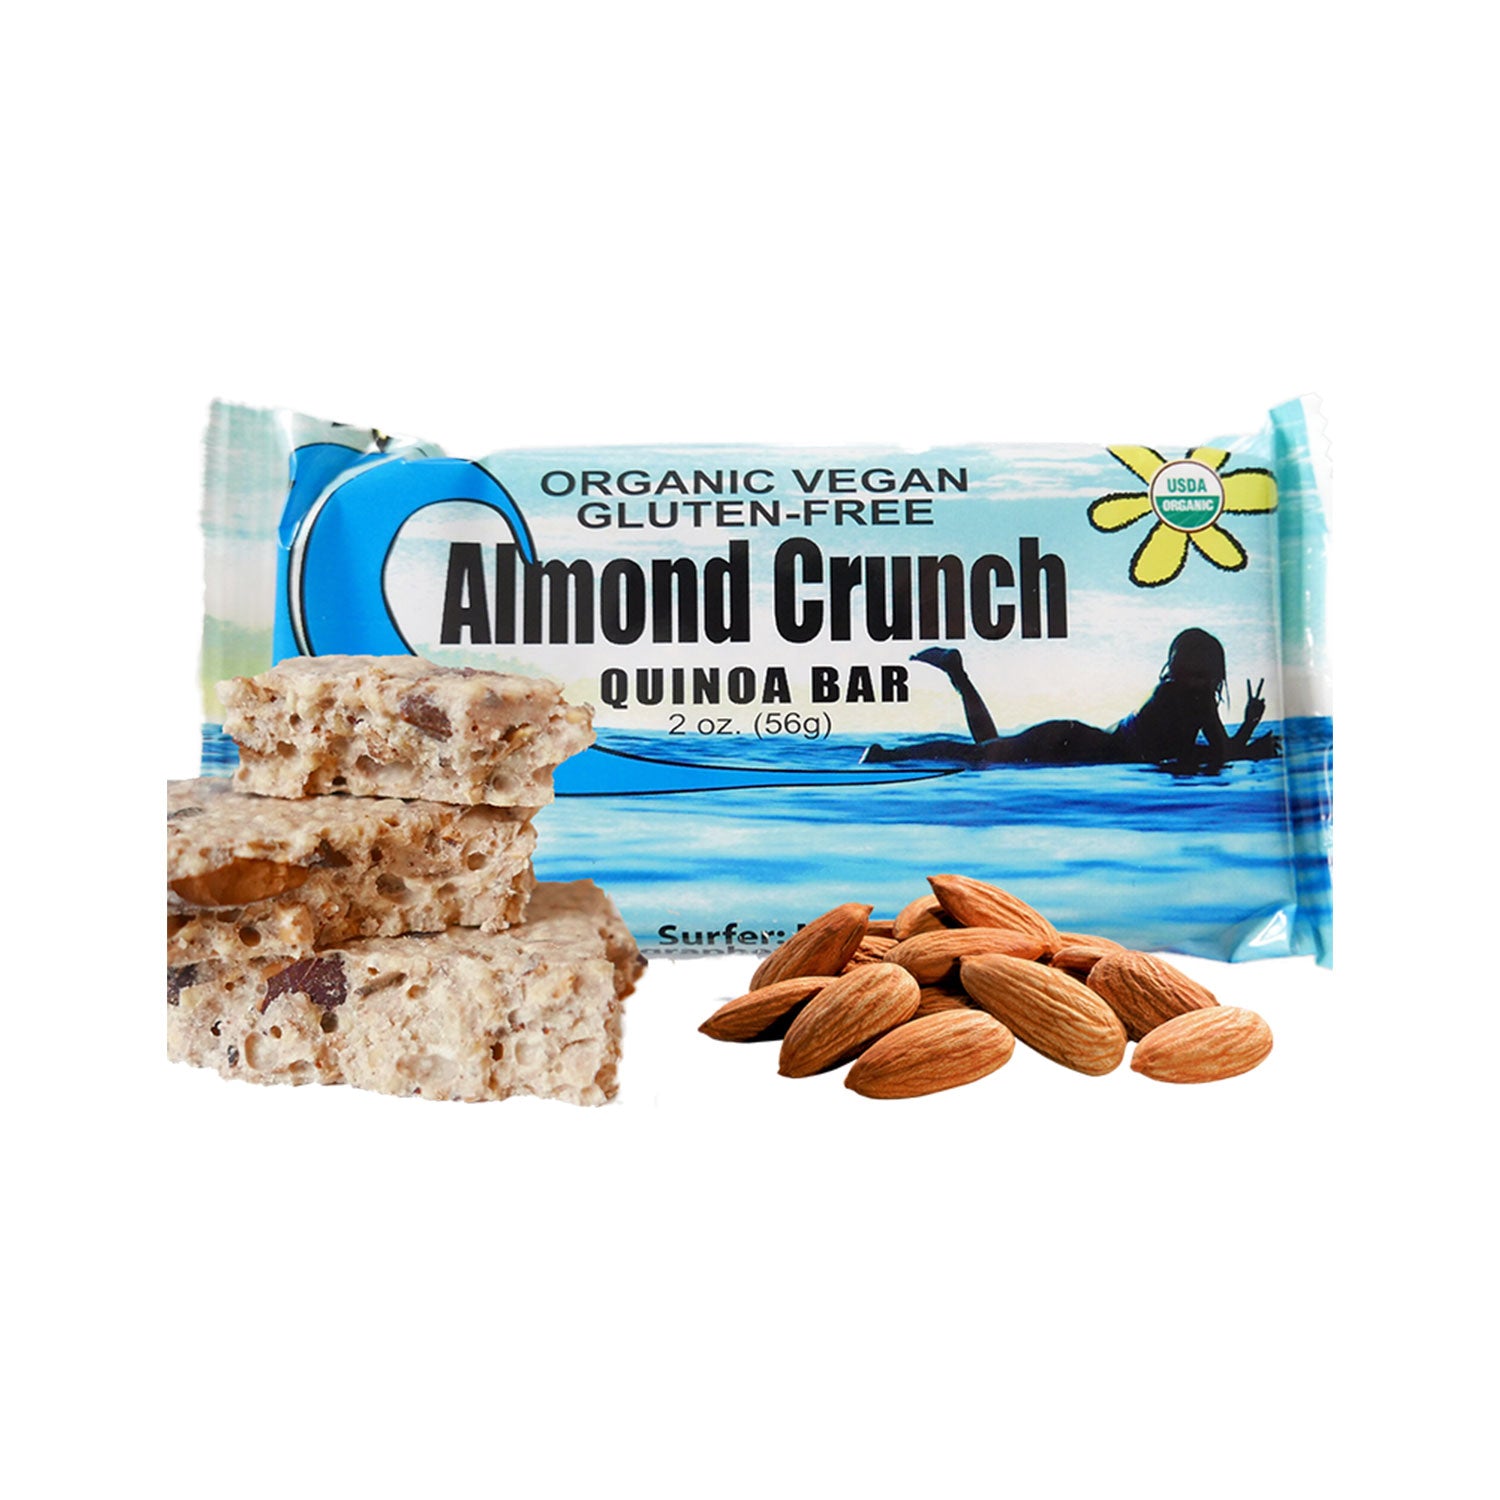 Almond Crunch Quinoa Bar